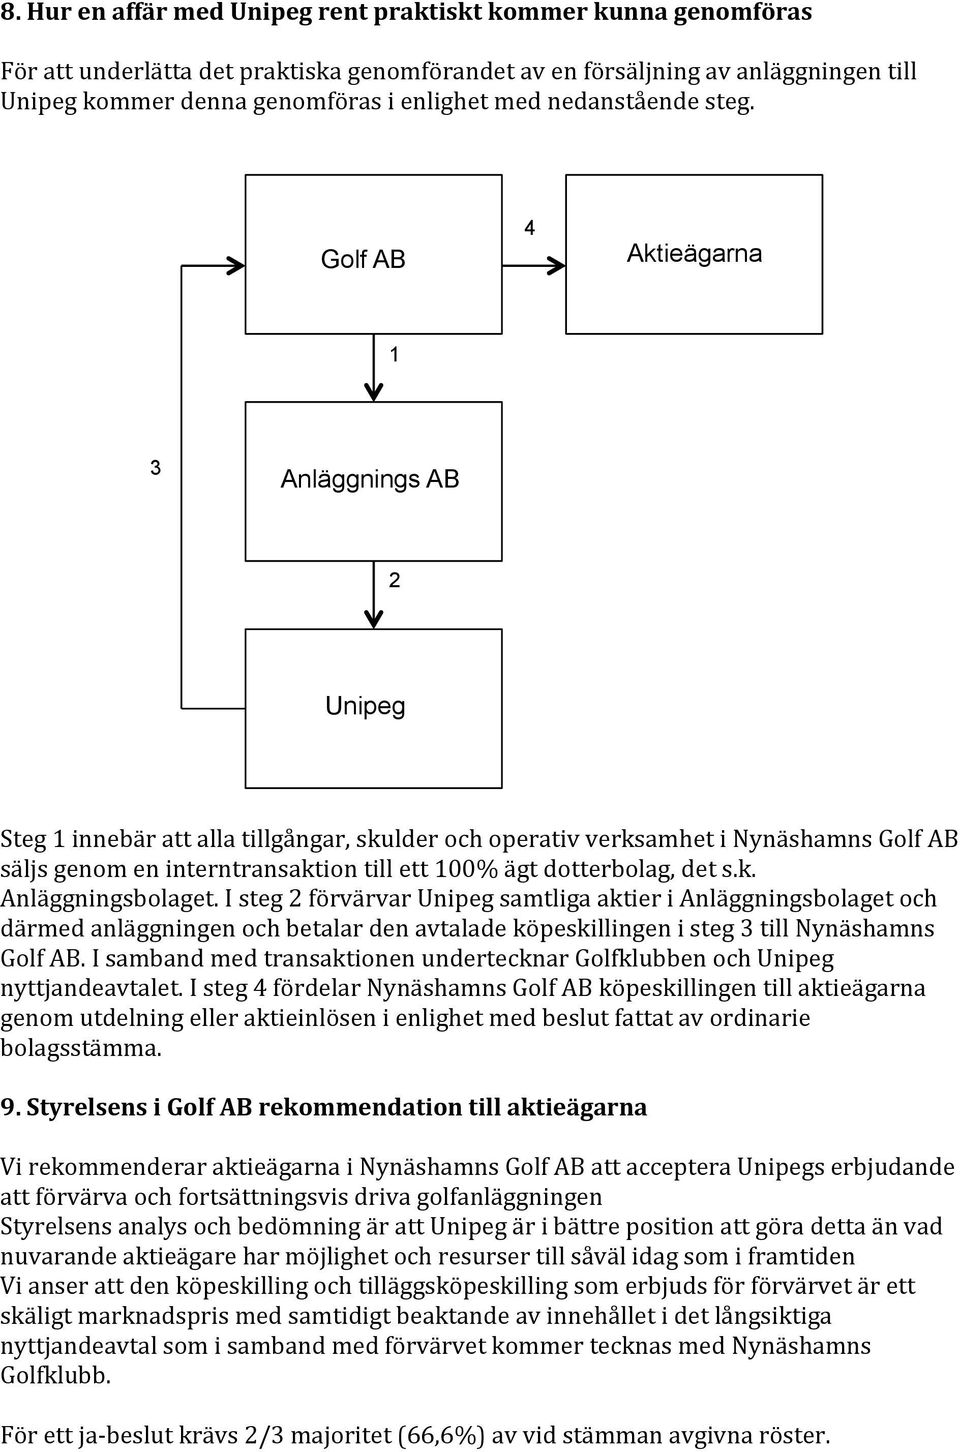 Golf AB 4 Aktieägarna 1 3 Anläggnings AB 2 Unipeg Steg 1 innebär att alla tillgångar, skulder och operativ verksamhet i Nynäshamns Golf AB säljs genom en interntransaktion till ett 100% ägt